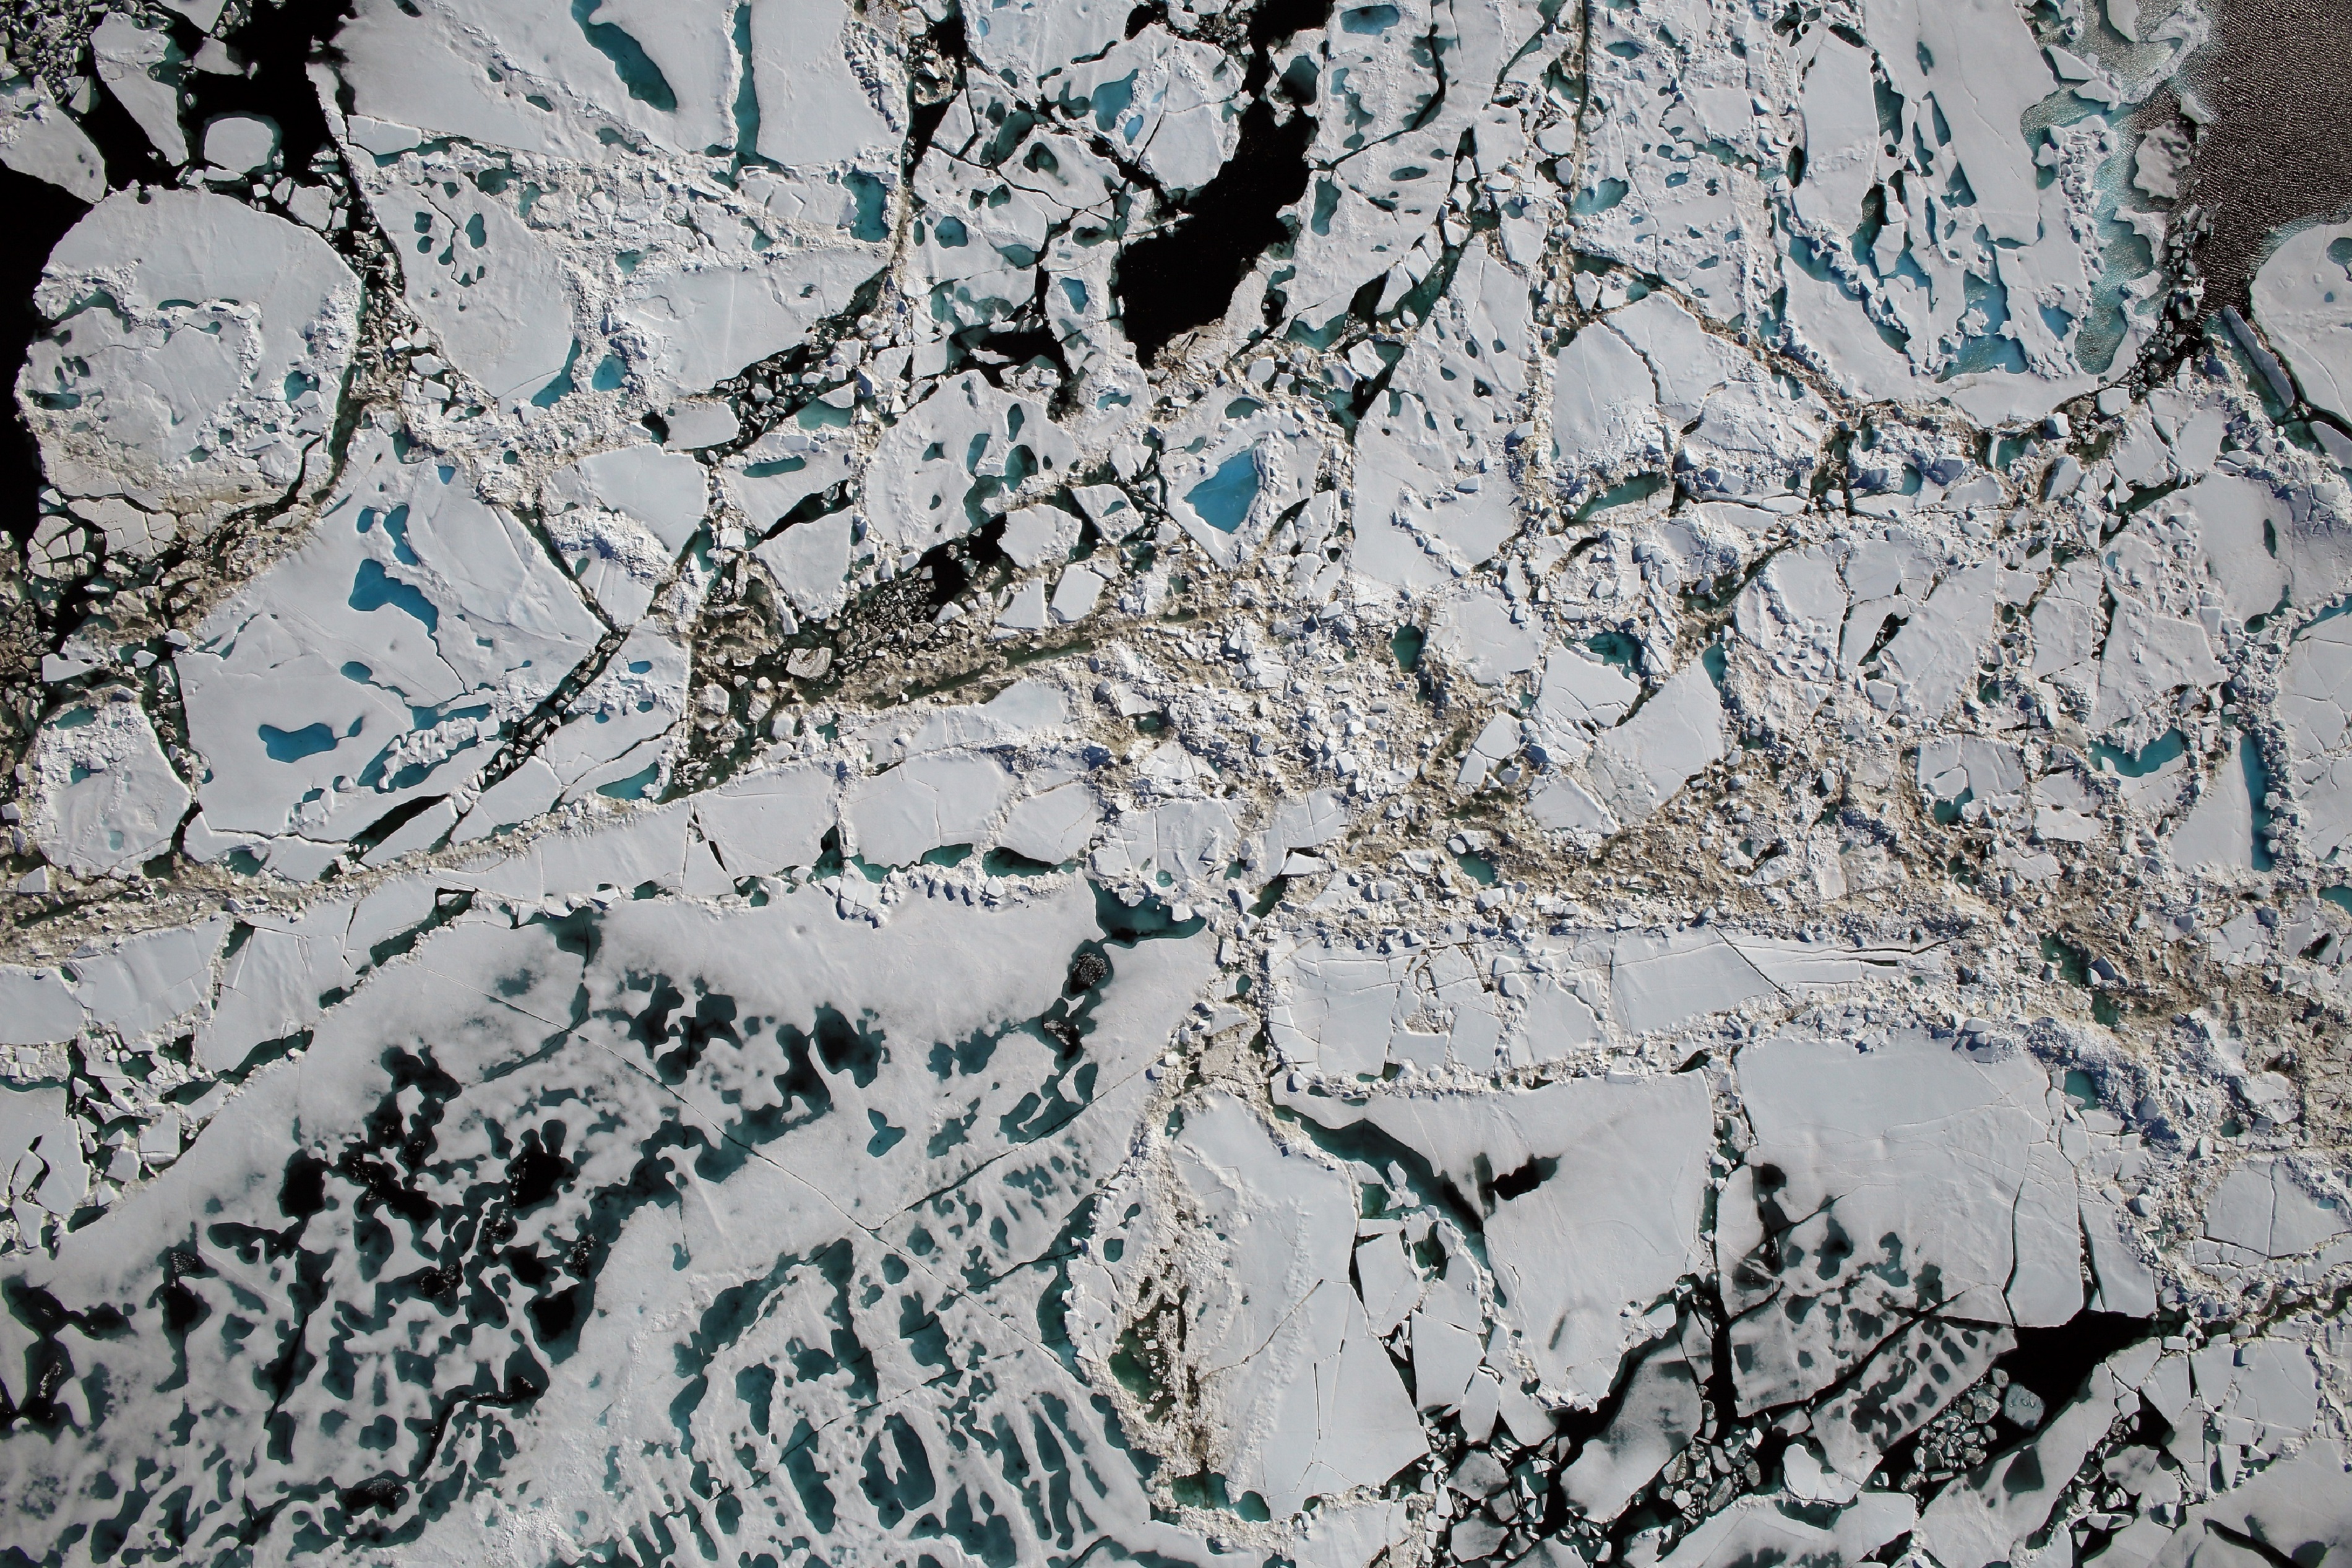 Trozos de hielo marino, estanques de fusión y aguas abiertas, vistas desde 450 metros el pasado sábado. Fuente: NASA/Goddard/Operación IceBridge.